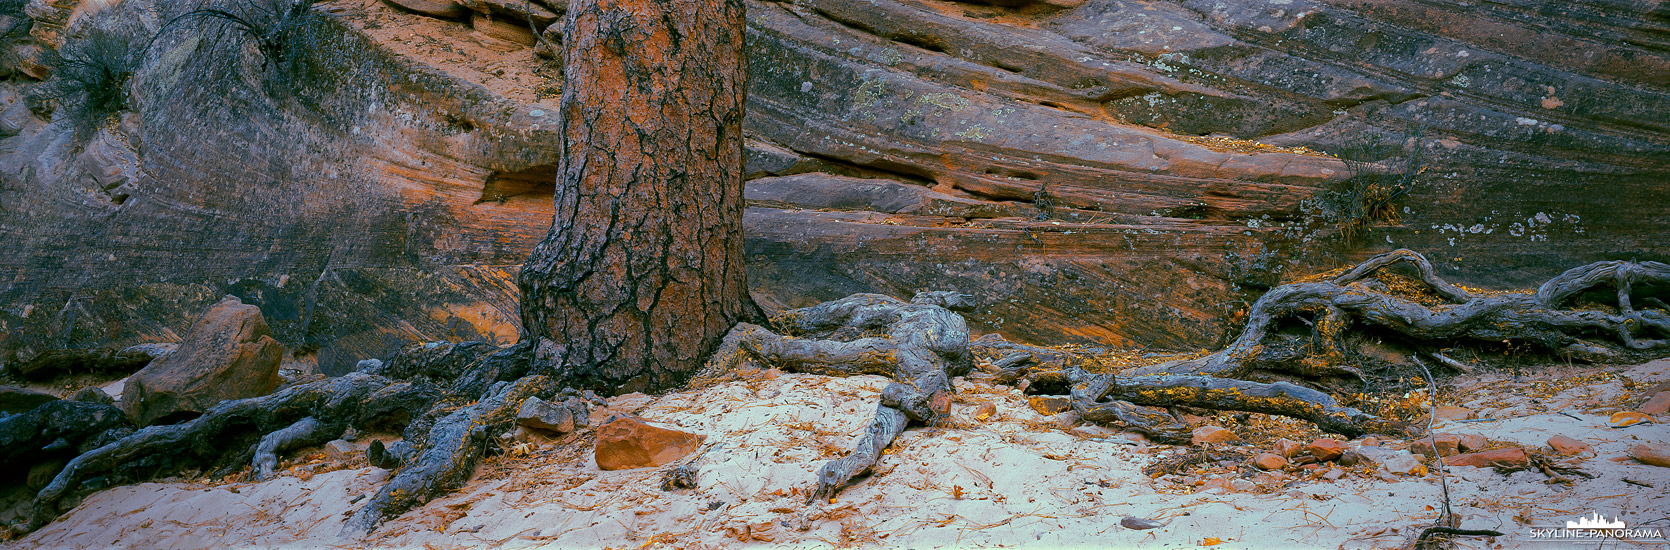 Zion Nationalpark - Baumstamm einer Kiefer (p_01264)